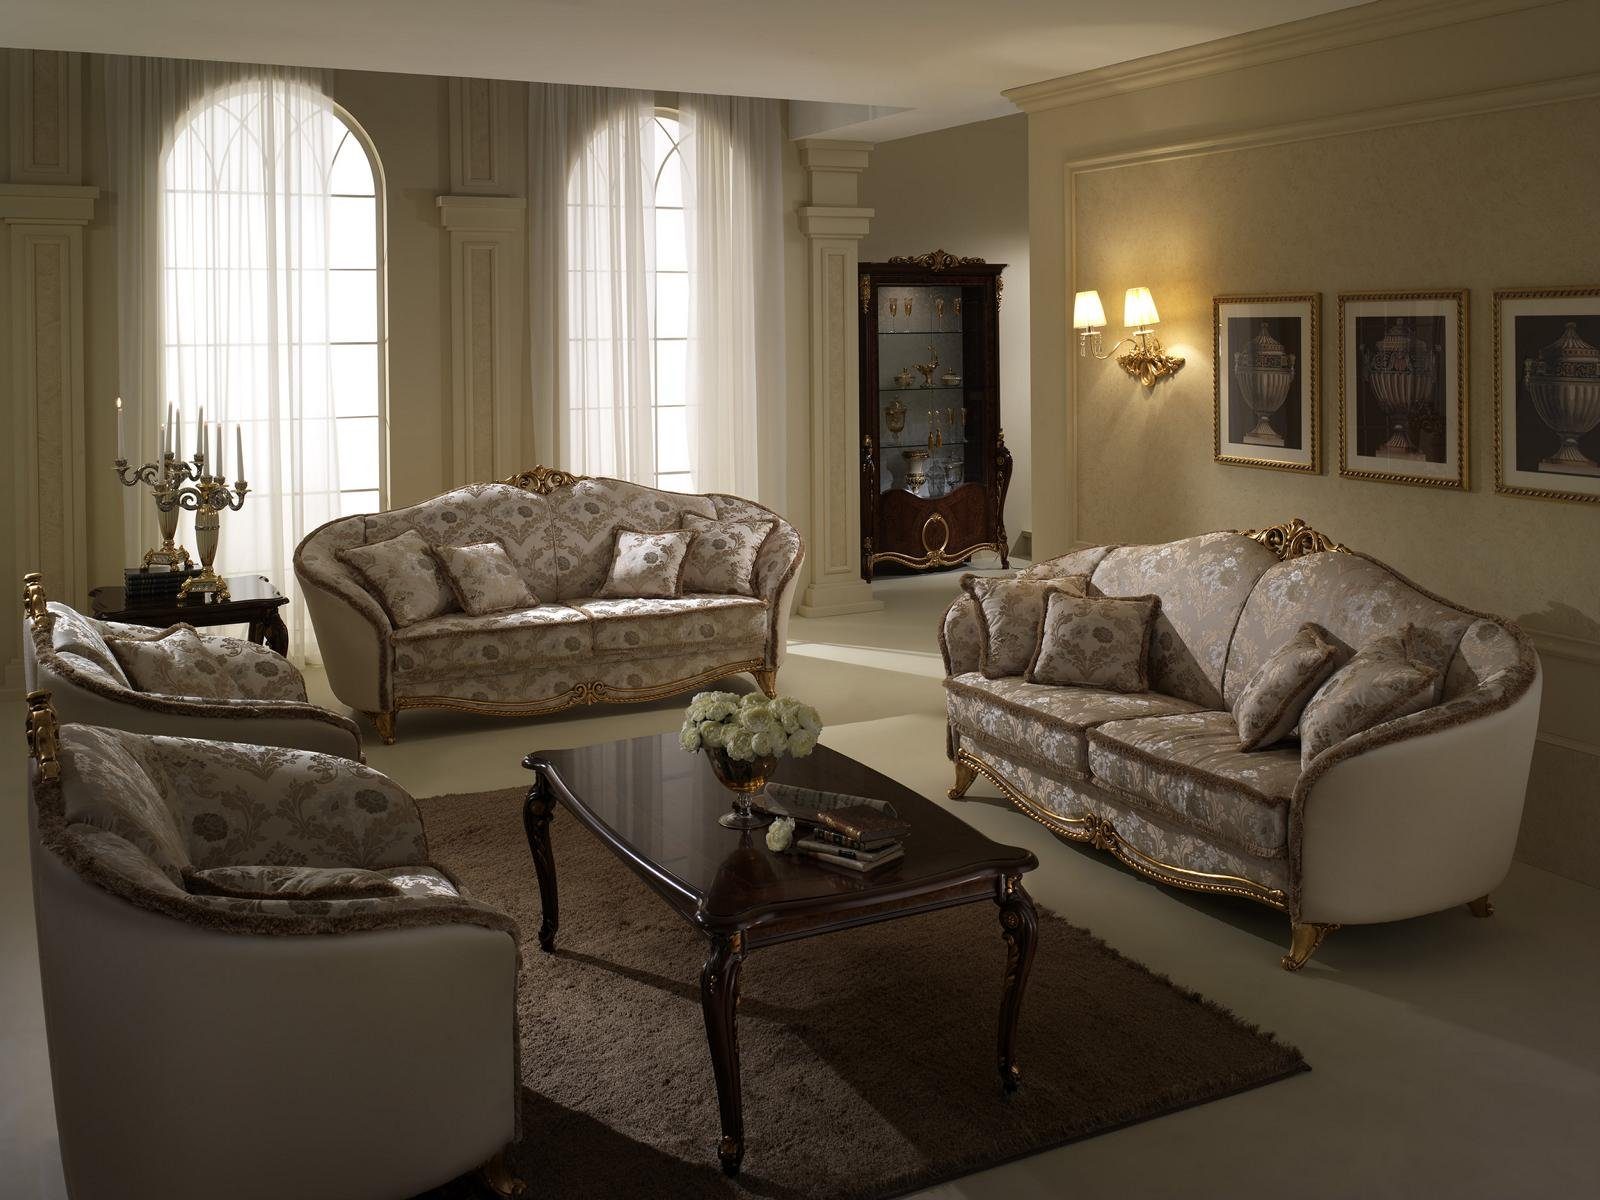 JVmoebel Wohnzimmer-Set, Luxus Klasse 3+2 Italienische Möbel Sofagarnitur Couch Sofa arredoclassic™ Neu